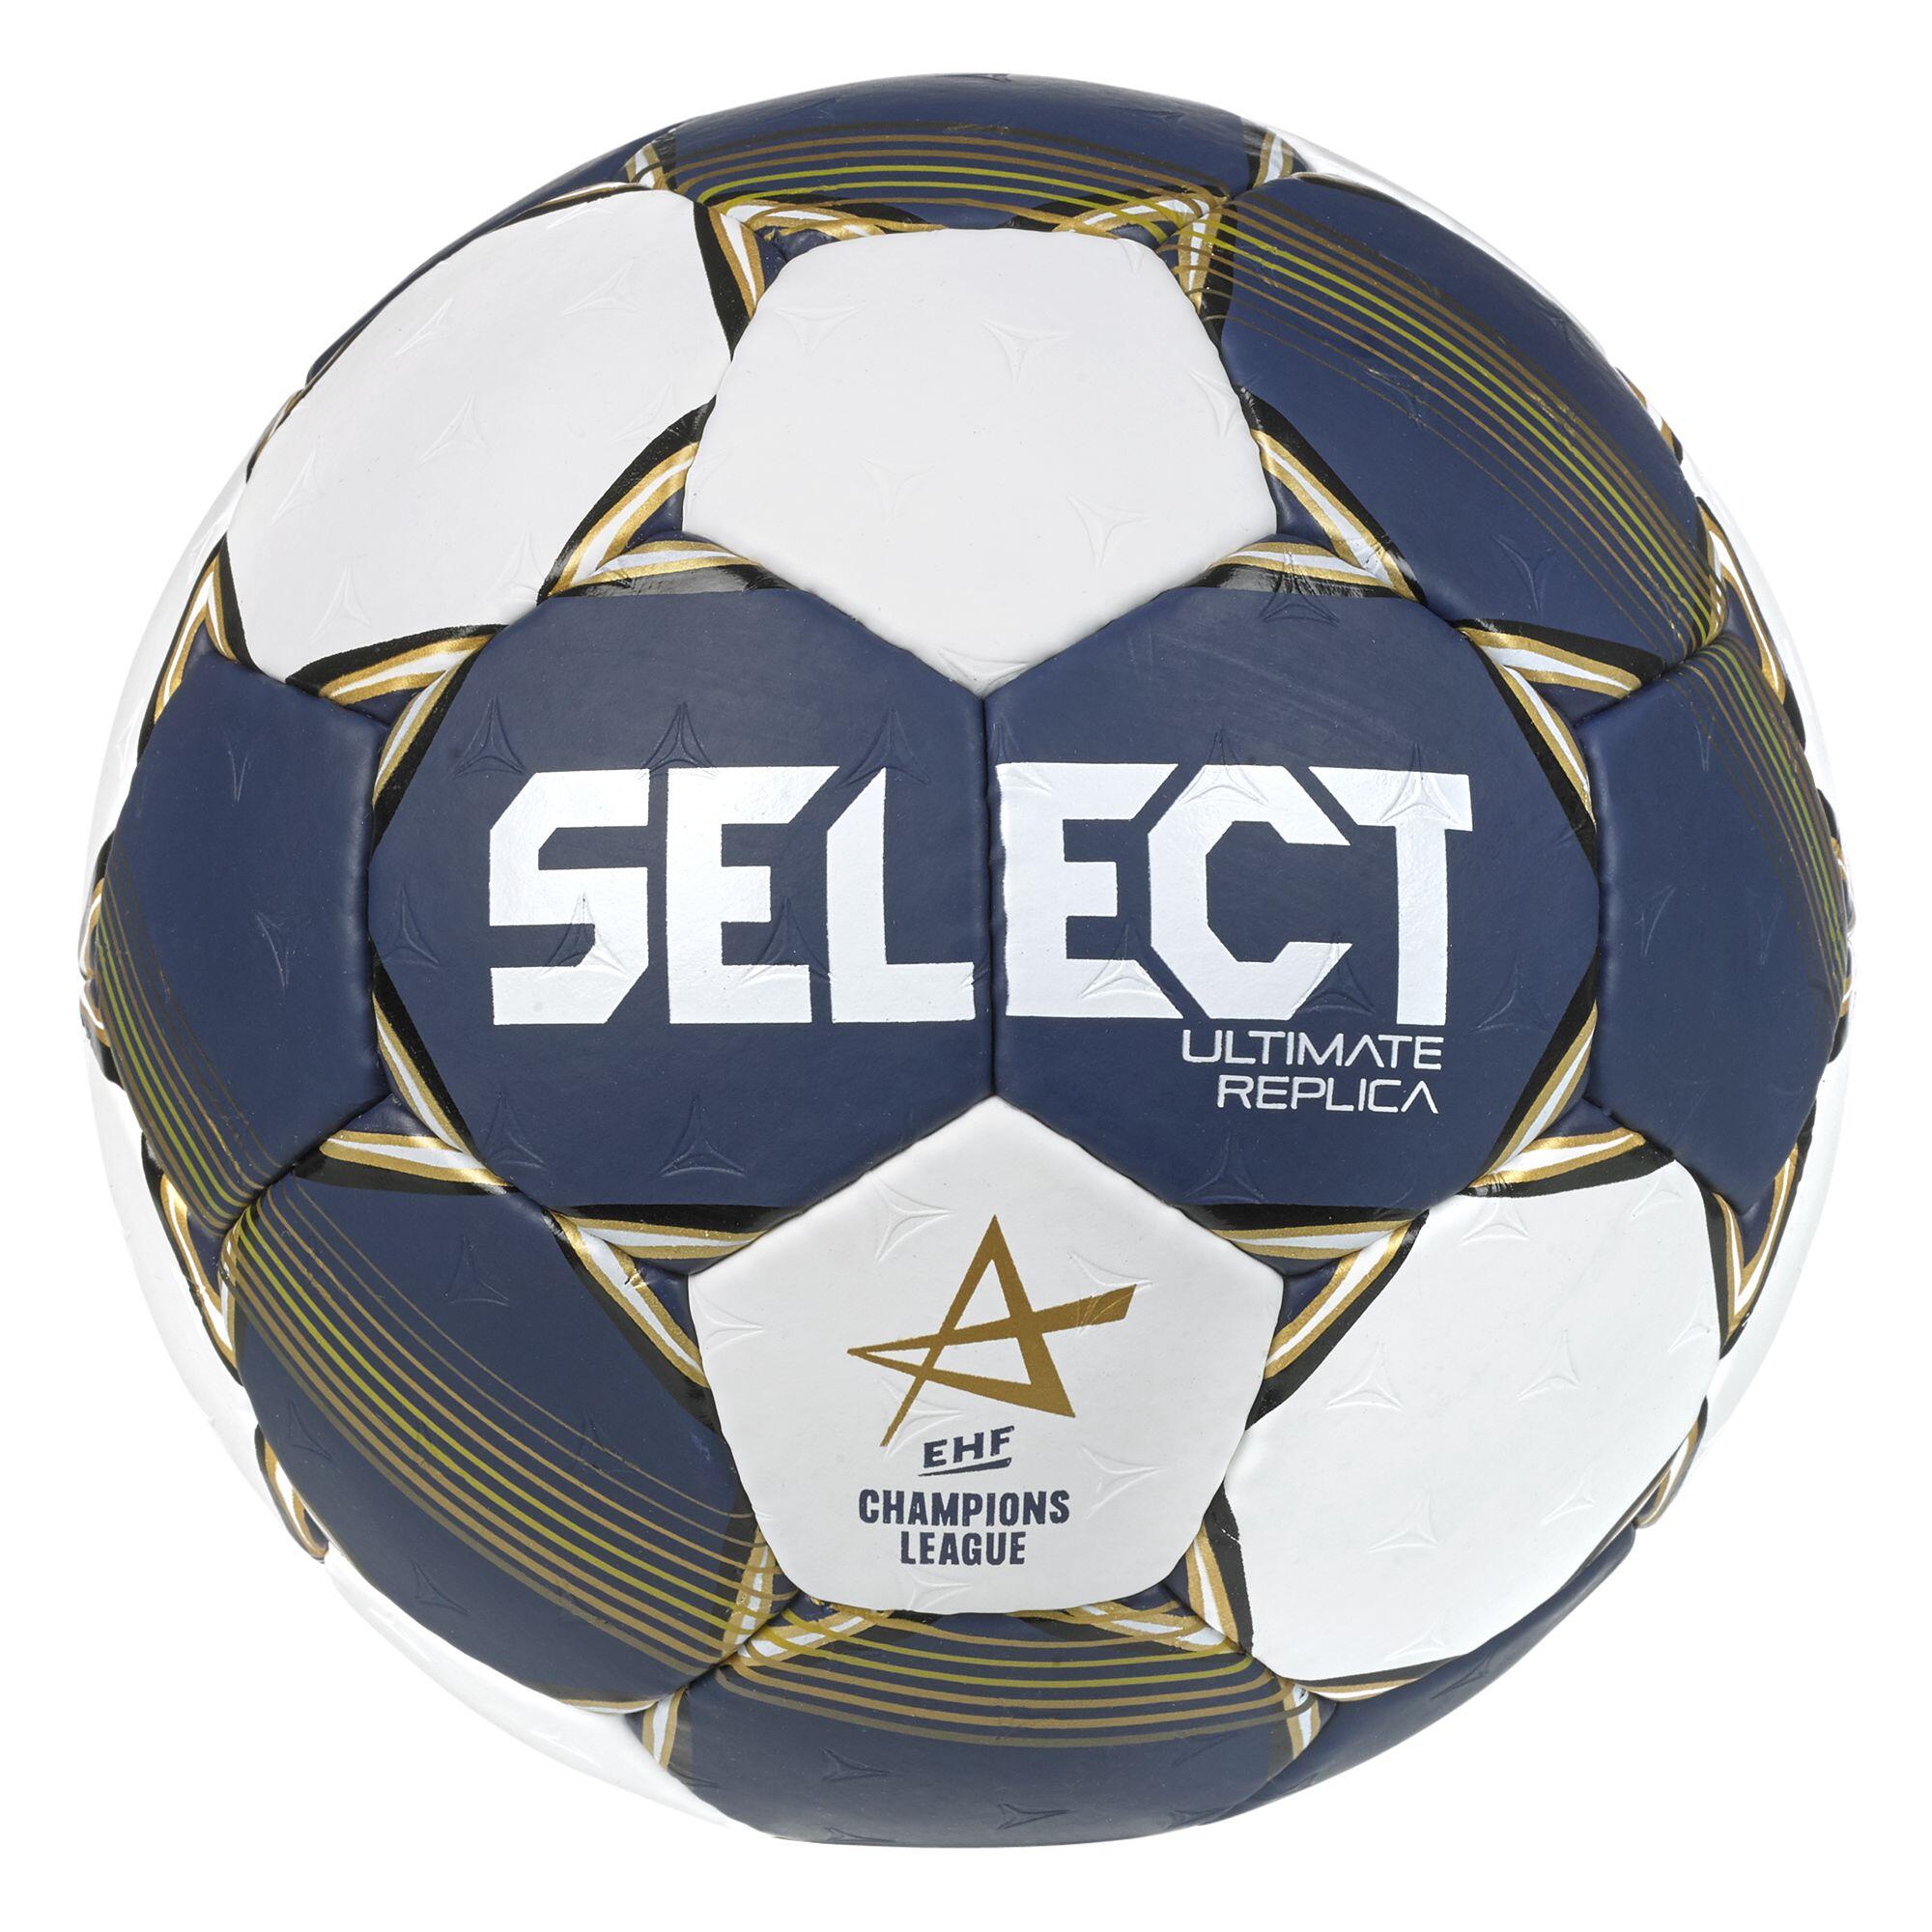 Minge Handbal Ultimate Replica Select CL 22 Mărimea 3 – albastru-auriu-alb Accesorii  Mingi si accesorii handbal